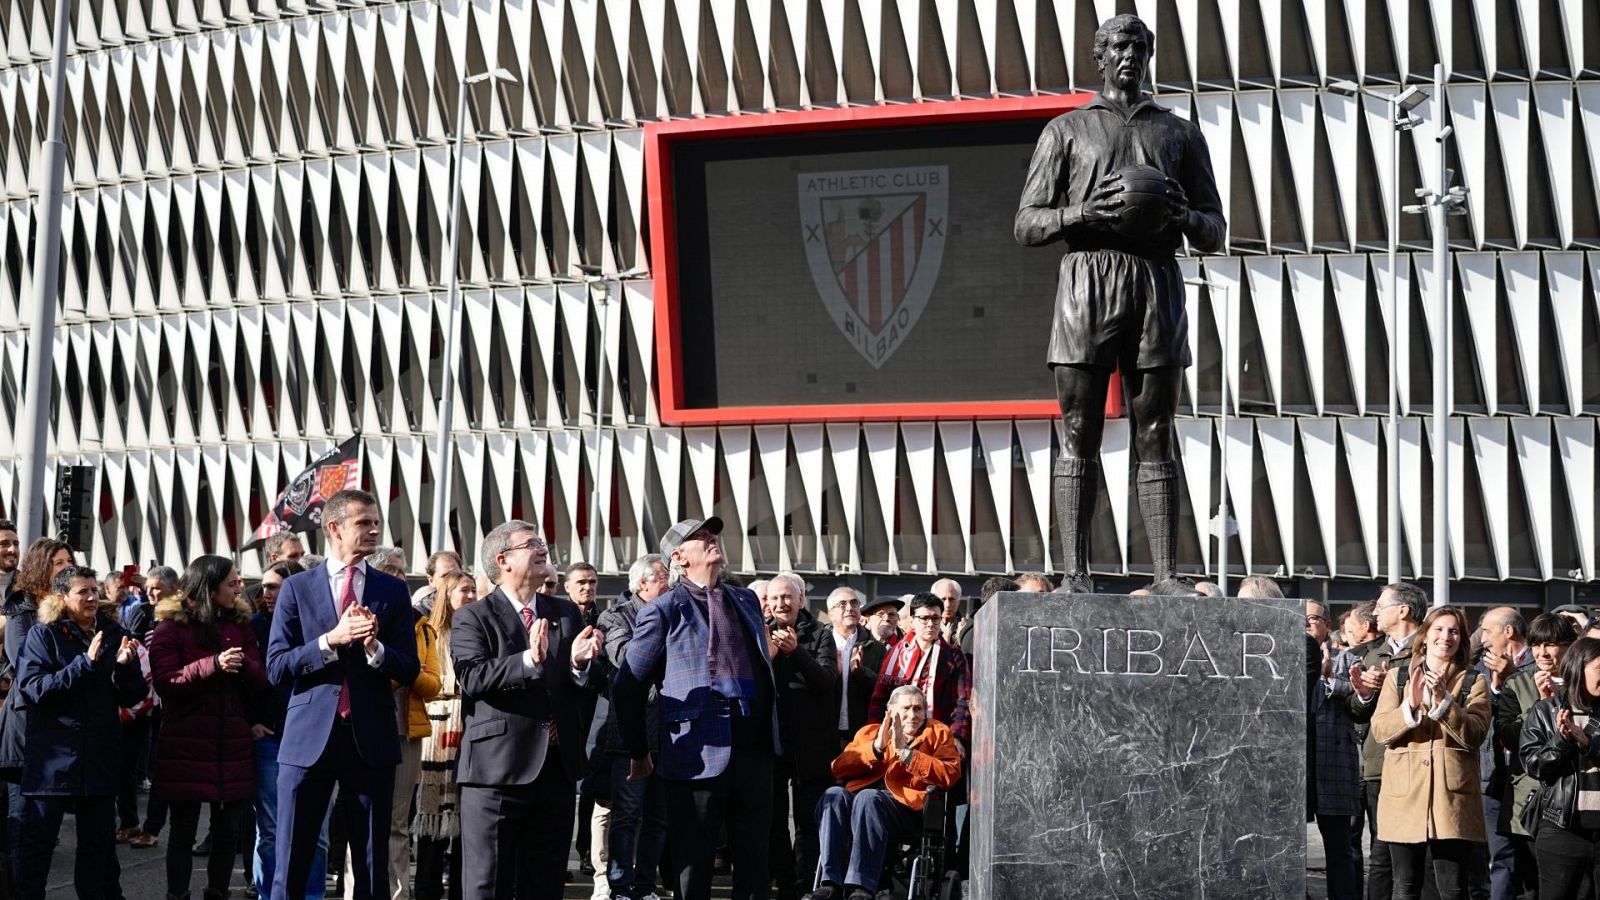 Así ha sido el homenaje a Iribar antes del Athletic Club - Atlético de Madrid - ver ahora